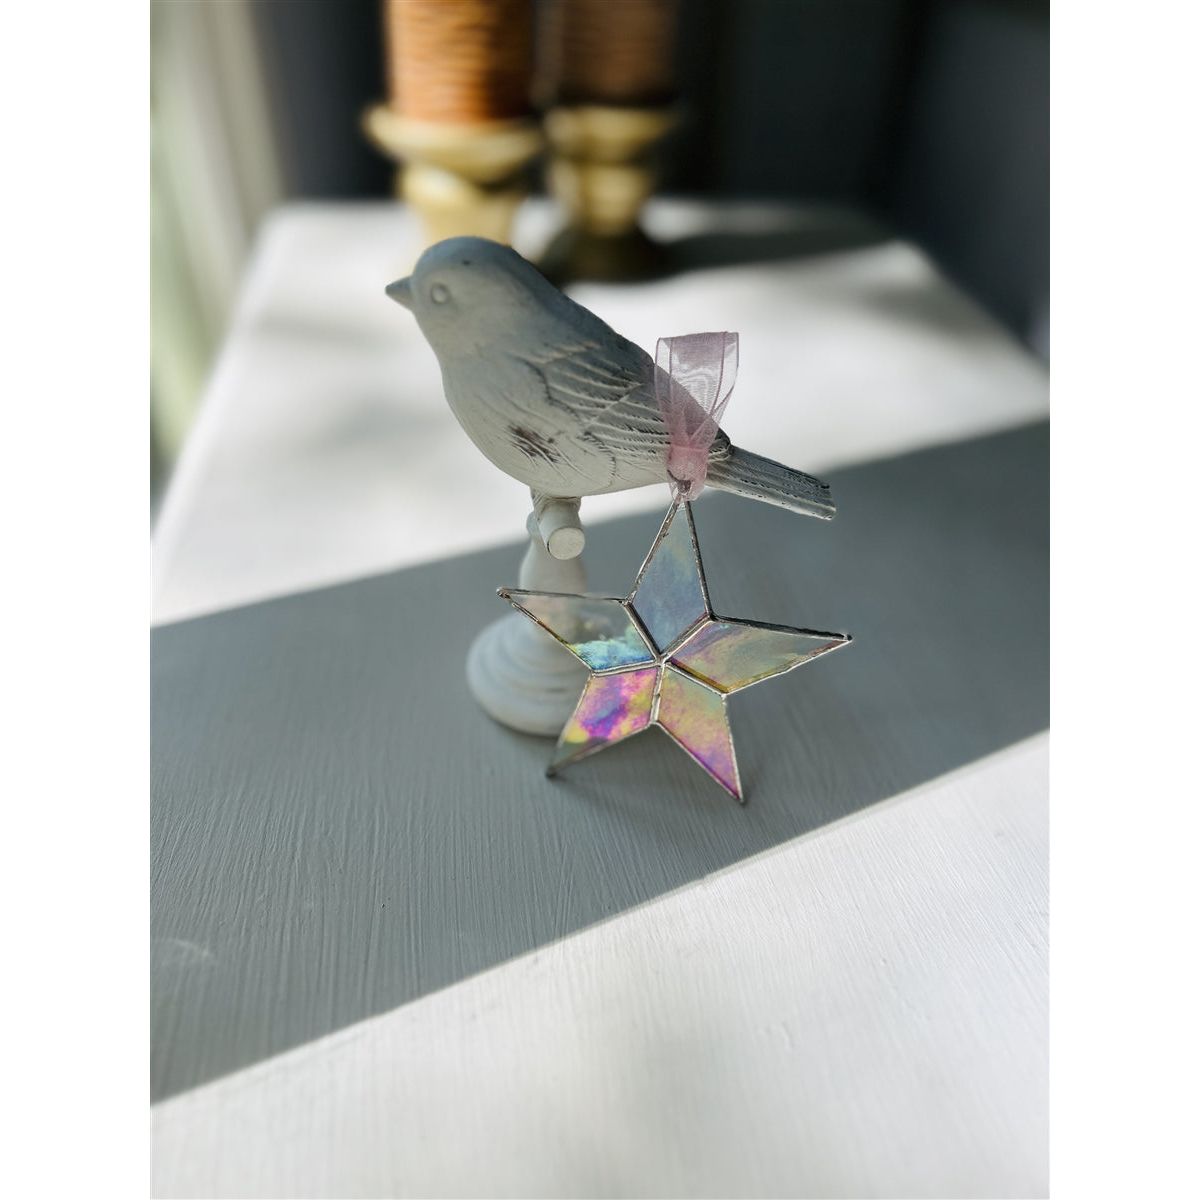 Little Star: Baby Girl Gift Handmade Stained Glass Star